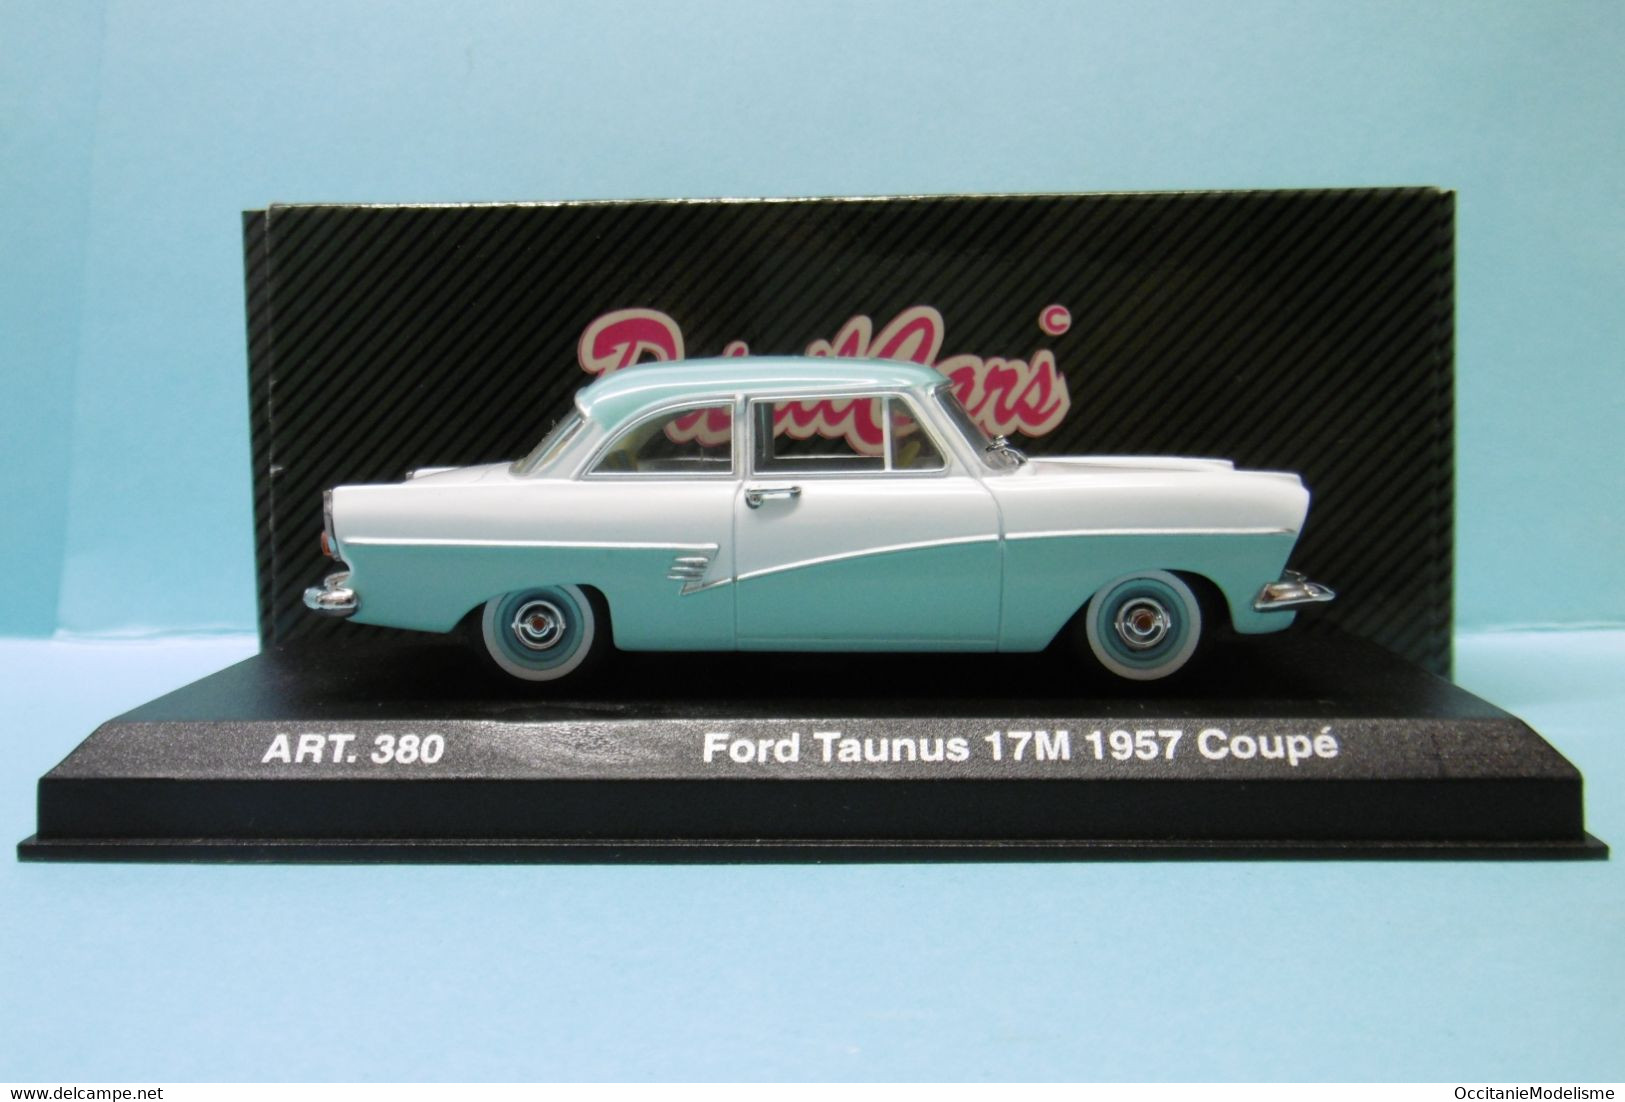 DetailCars - FORD TAUNUS 17M Coupé 1957 Blanc Et Bleu Ciel Réf. 380 BO 1/43 - DetailCars